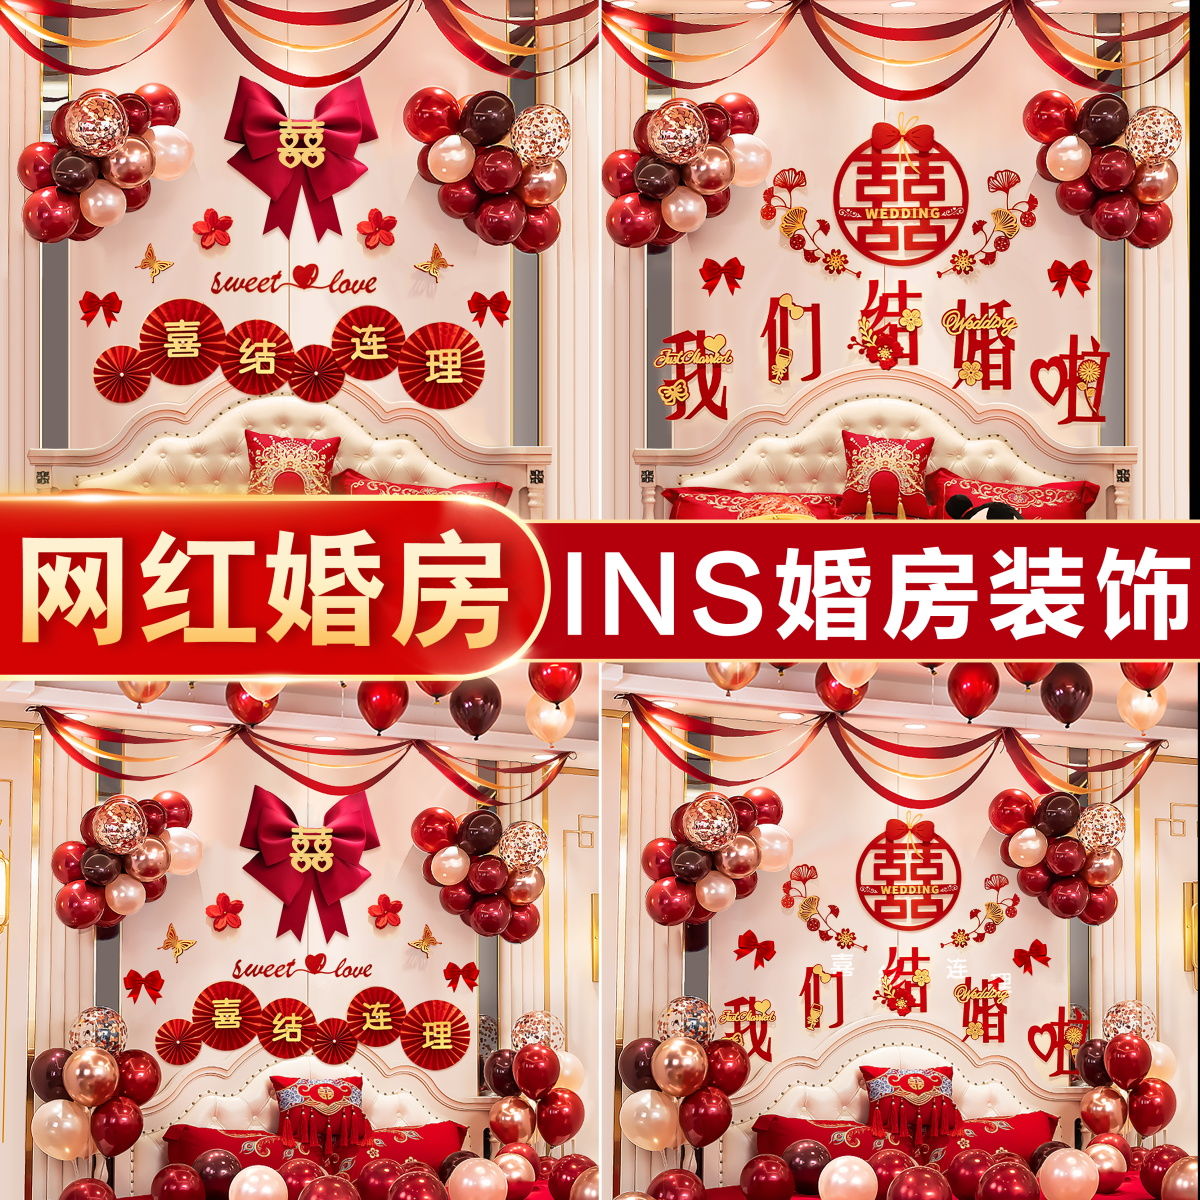 【包郵】INS網紅婚房場景布置氣球裝飾套裝